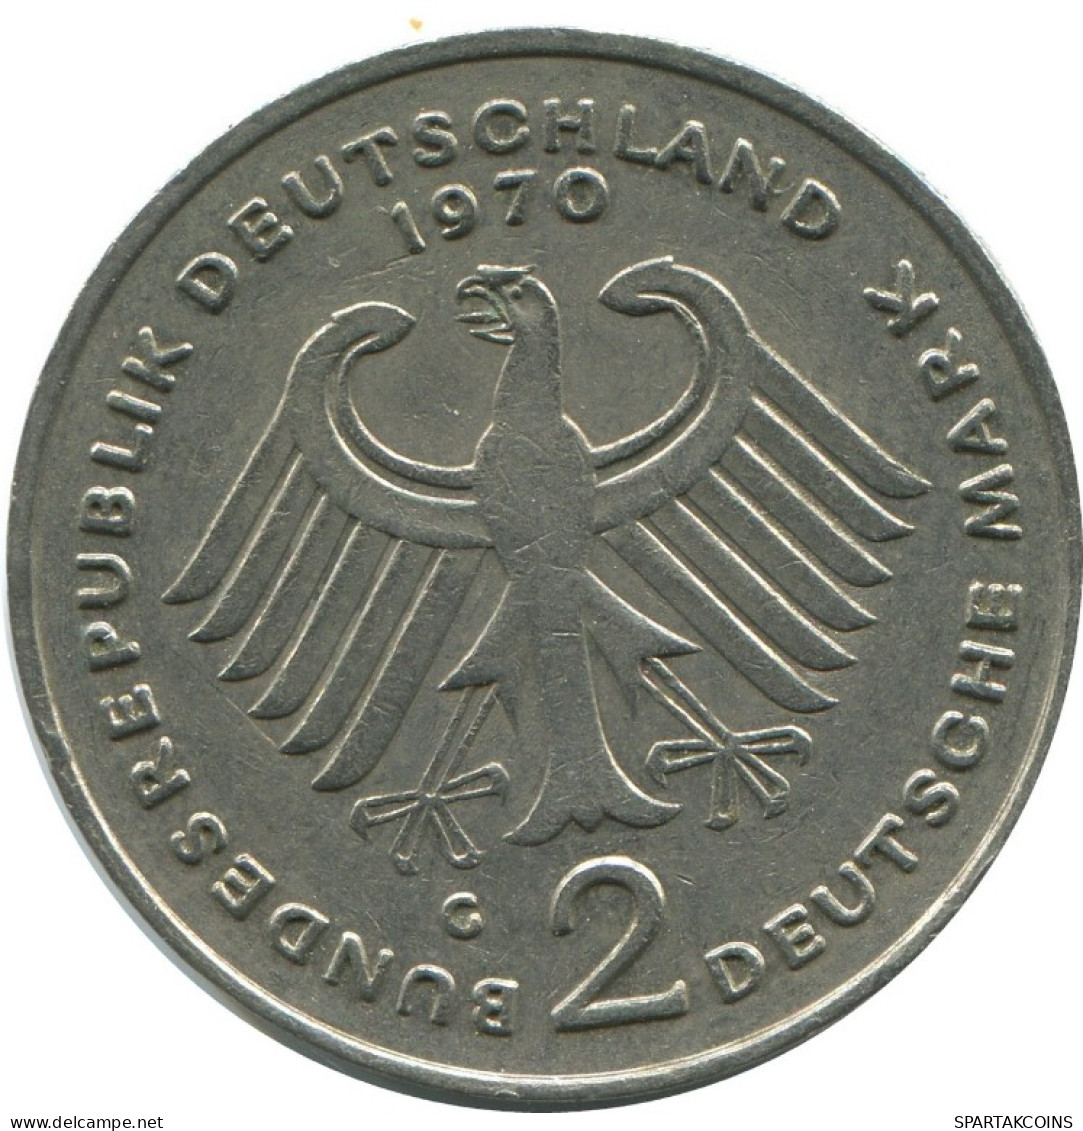 2 DM 1970 C K.ADENAUER BRD ALEMANIA Moneda GERMANY #AG281.3.E.A - 2 Mark